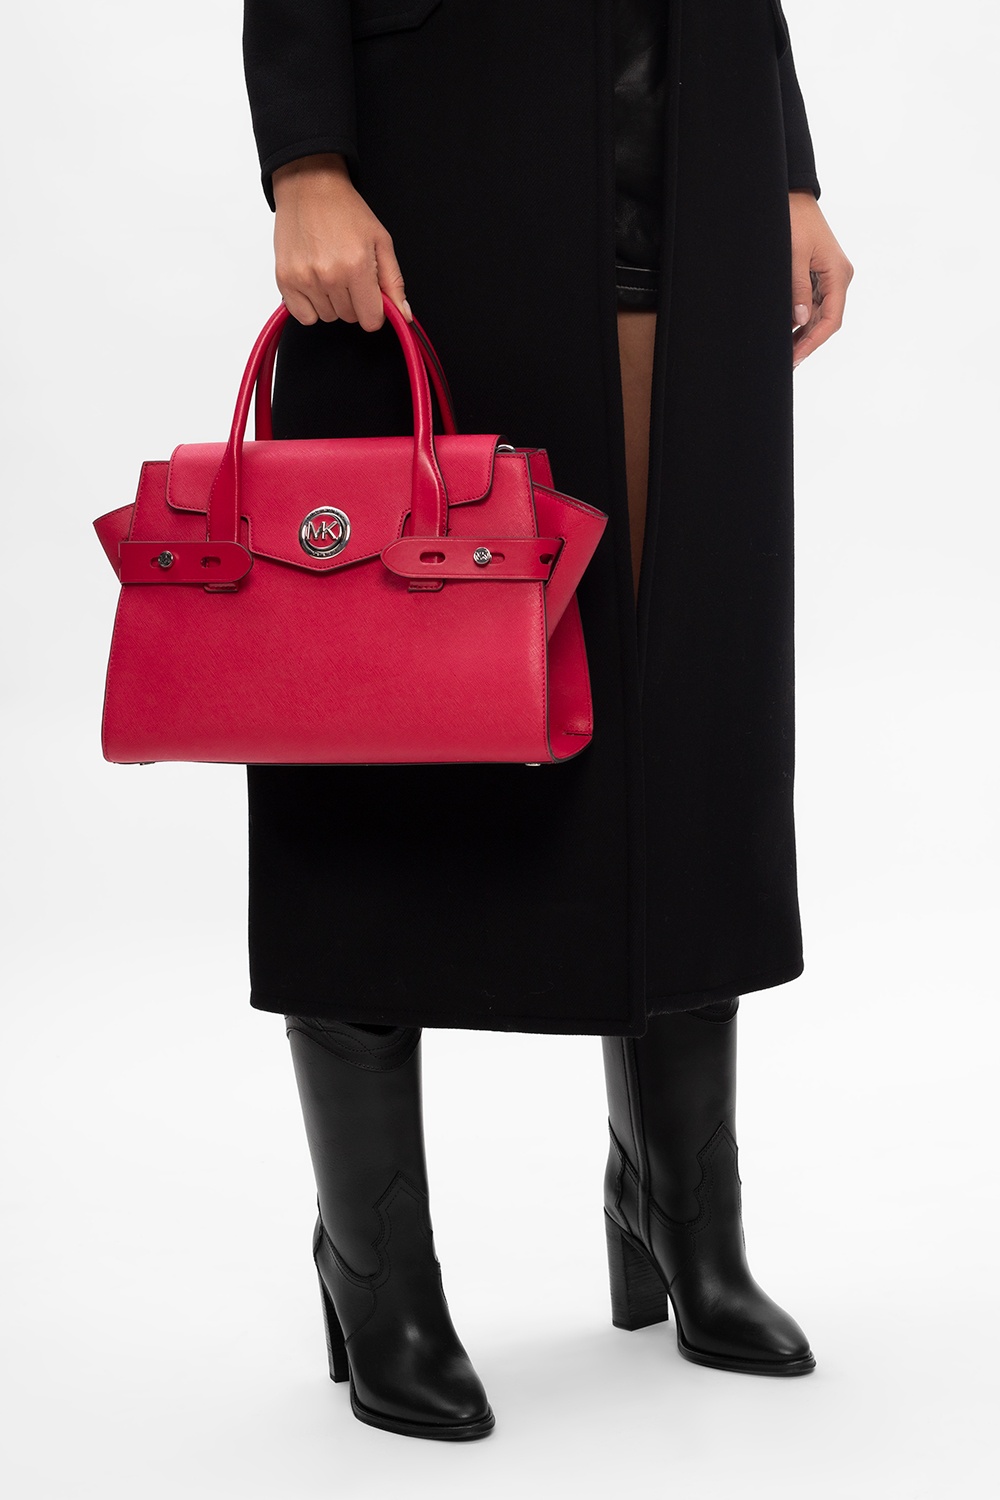 Michael Michael Kors 'Carmen' shoulder bag, Women's Bags